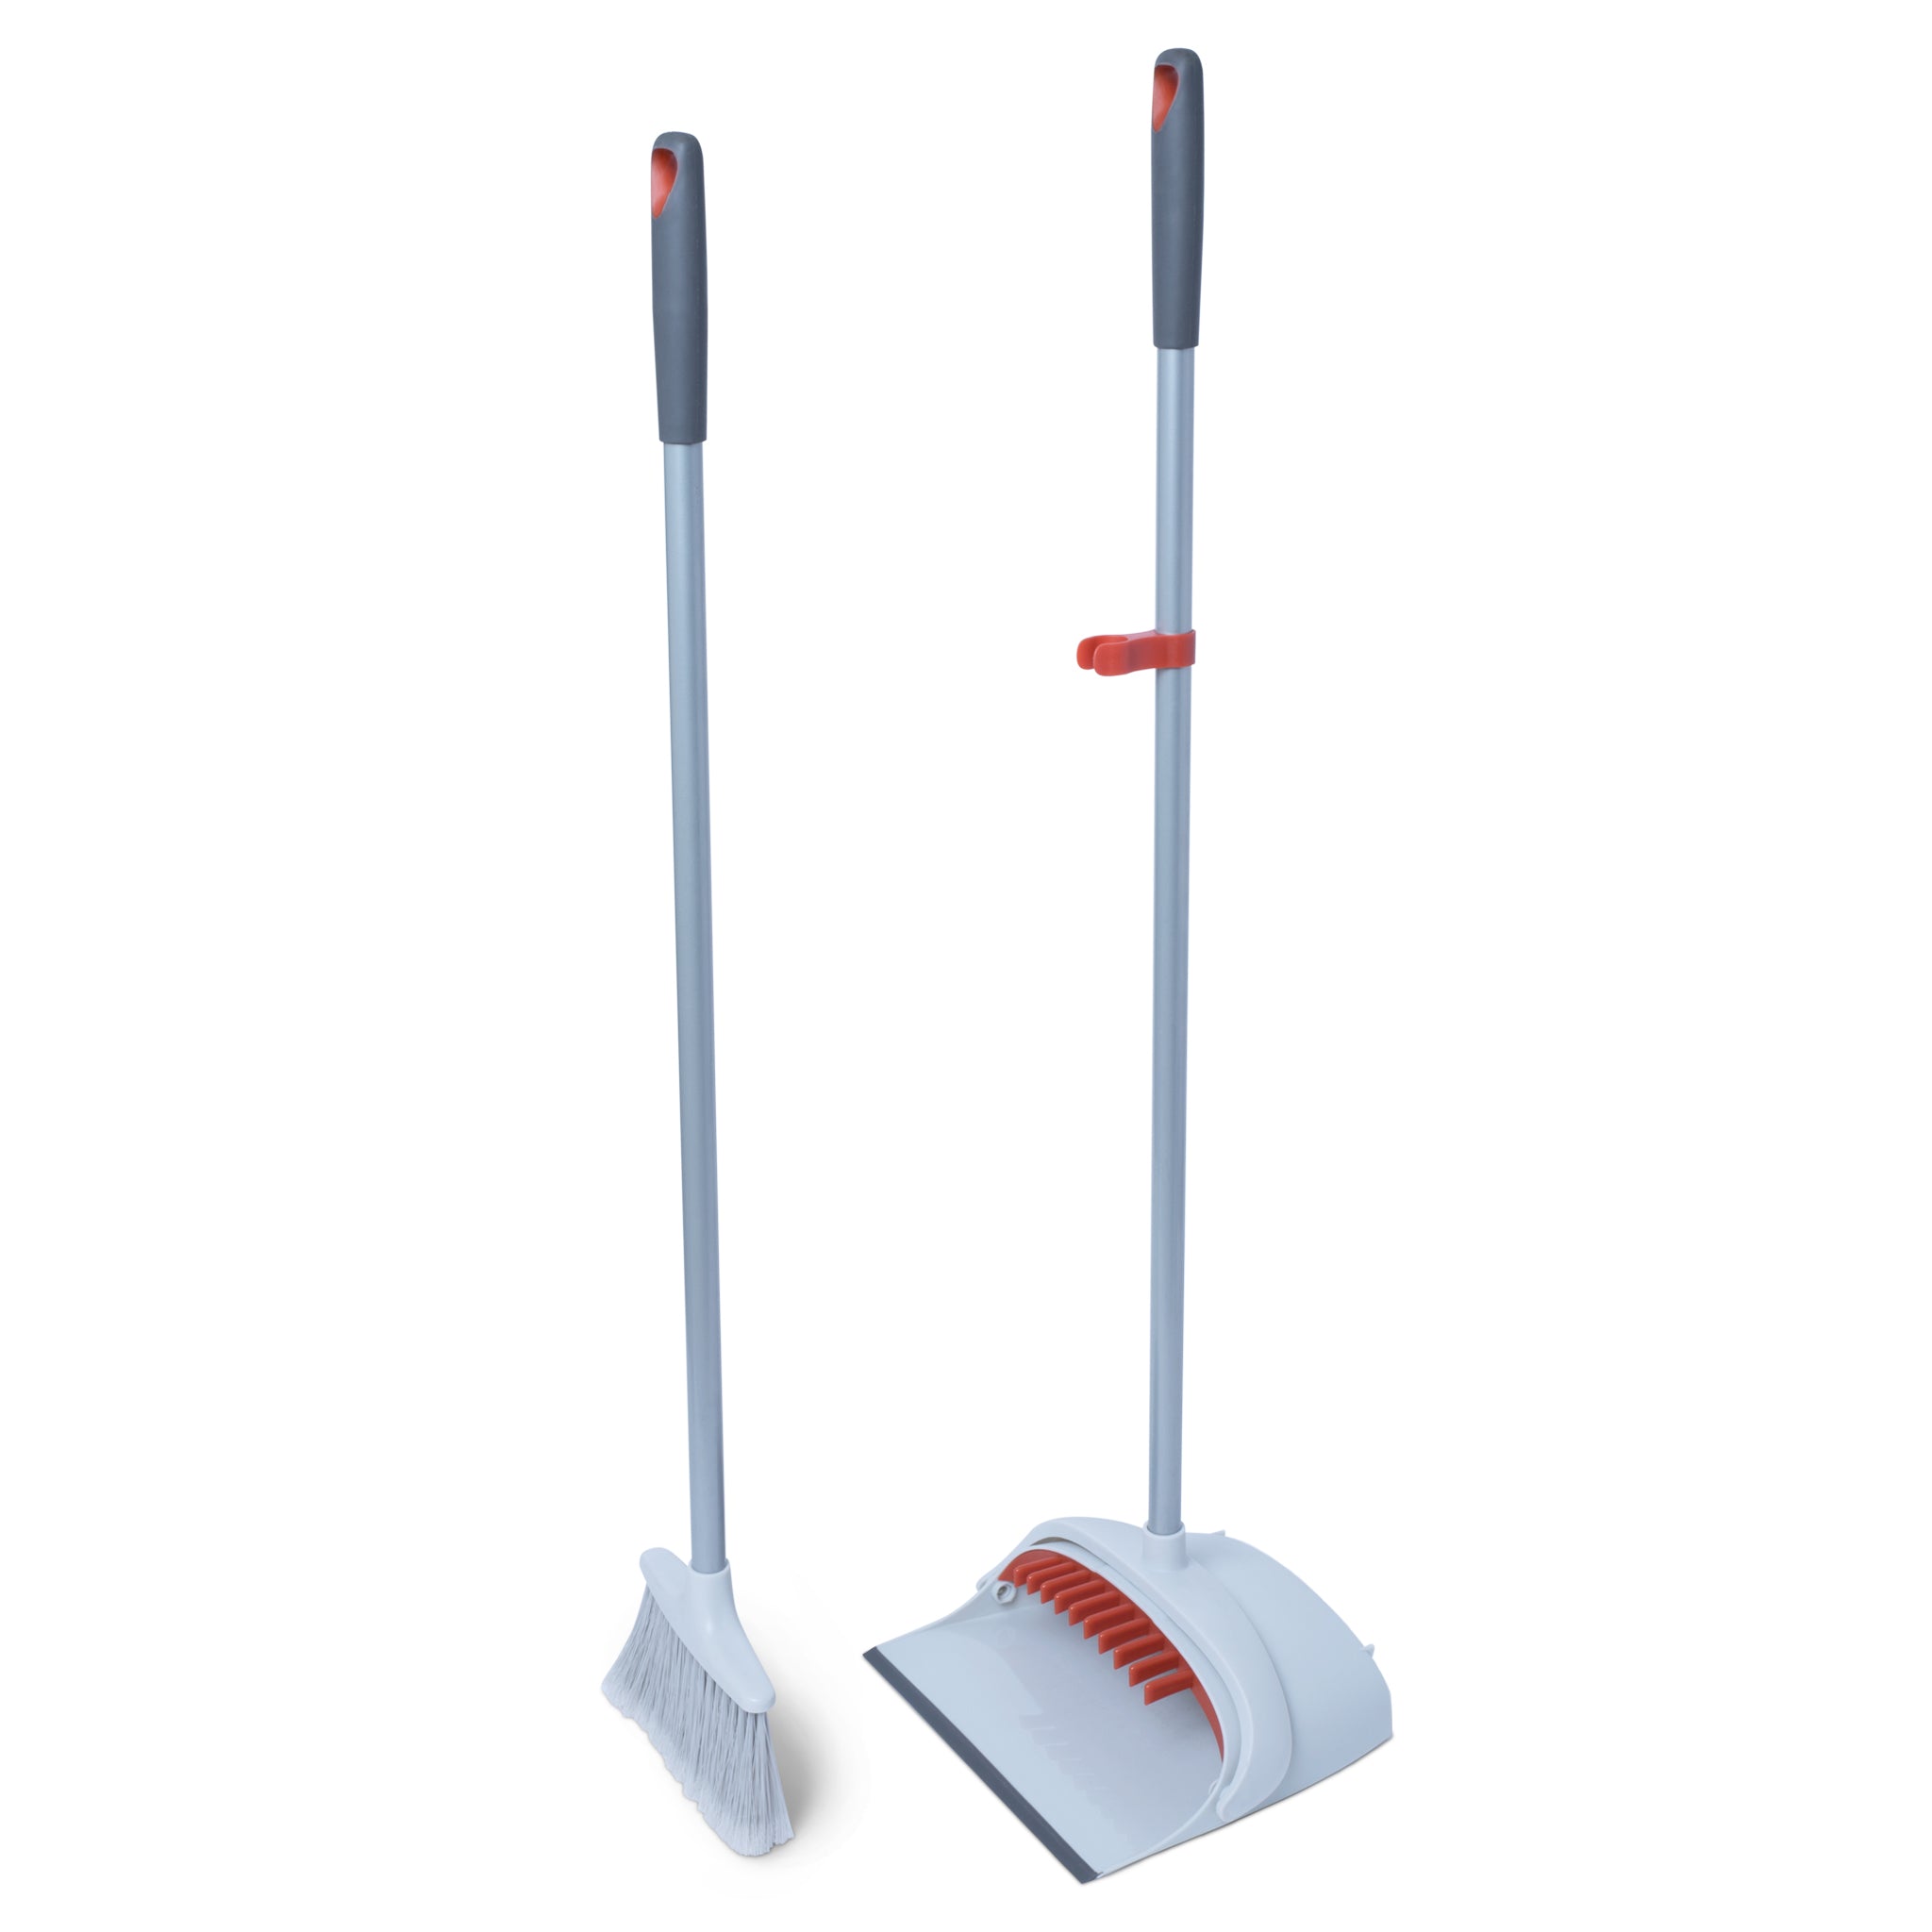 http://www.shopsmartdesign.com/cdn/shop/products/handheld-dustpan-and-broom-set-smart-design-cleaning-7001301-incrementing-number-848599.jpg?v=1679342305